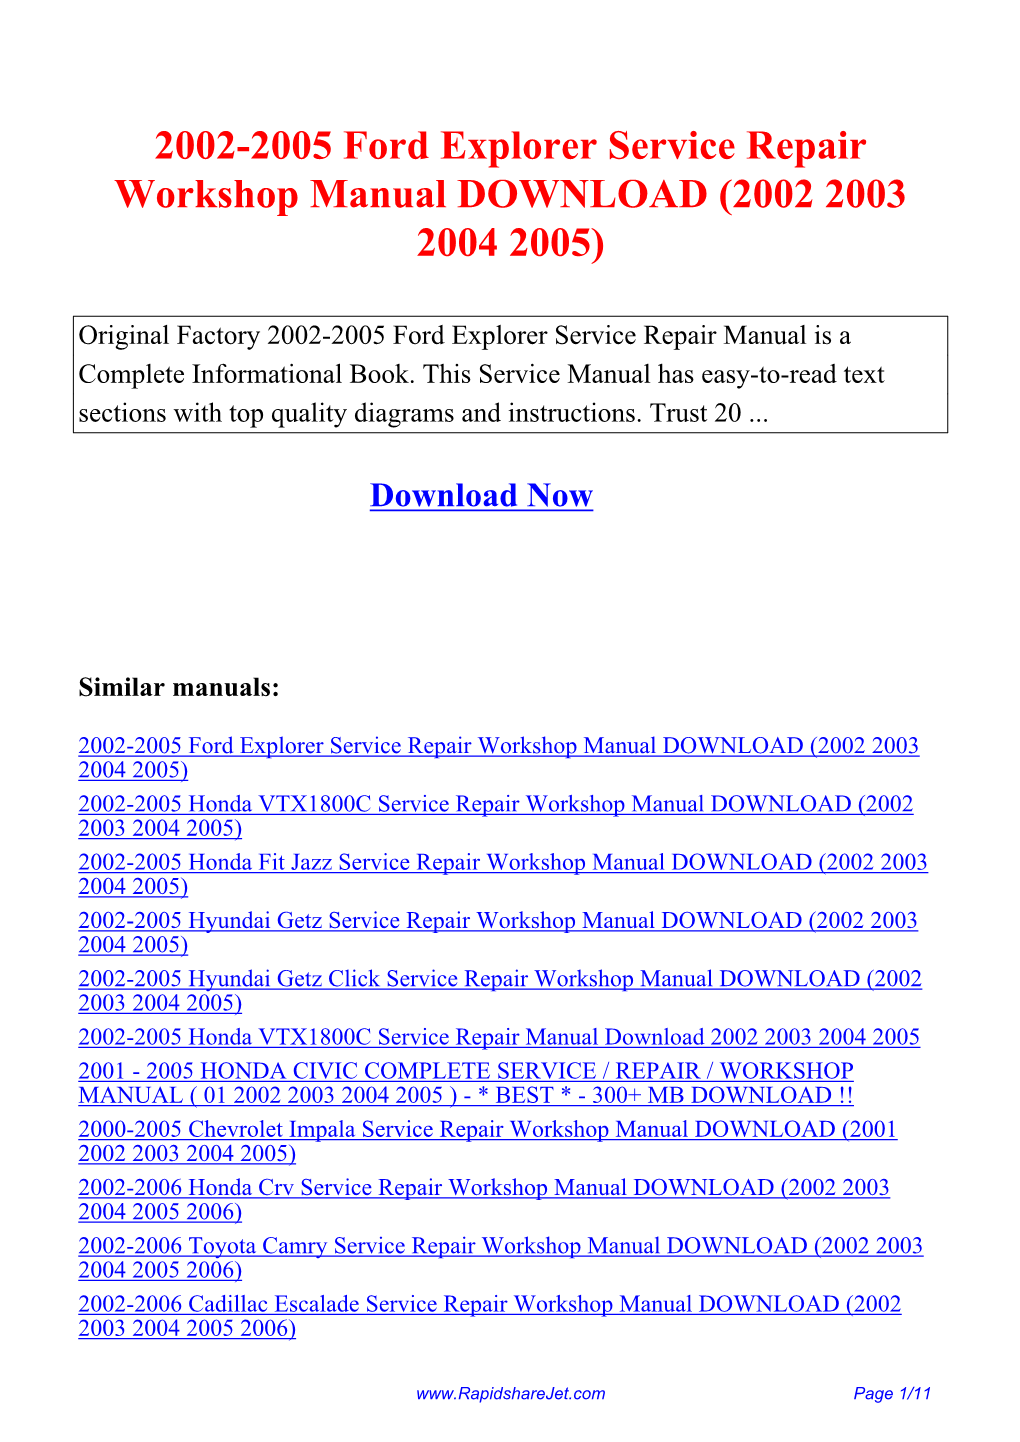 2002-2005 Ford Explorer Service Repair Workshop Manual DOWNLOAD (2002 2003 2004 2005)